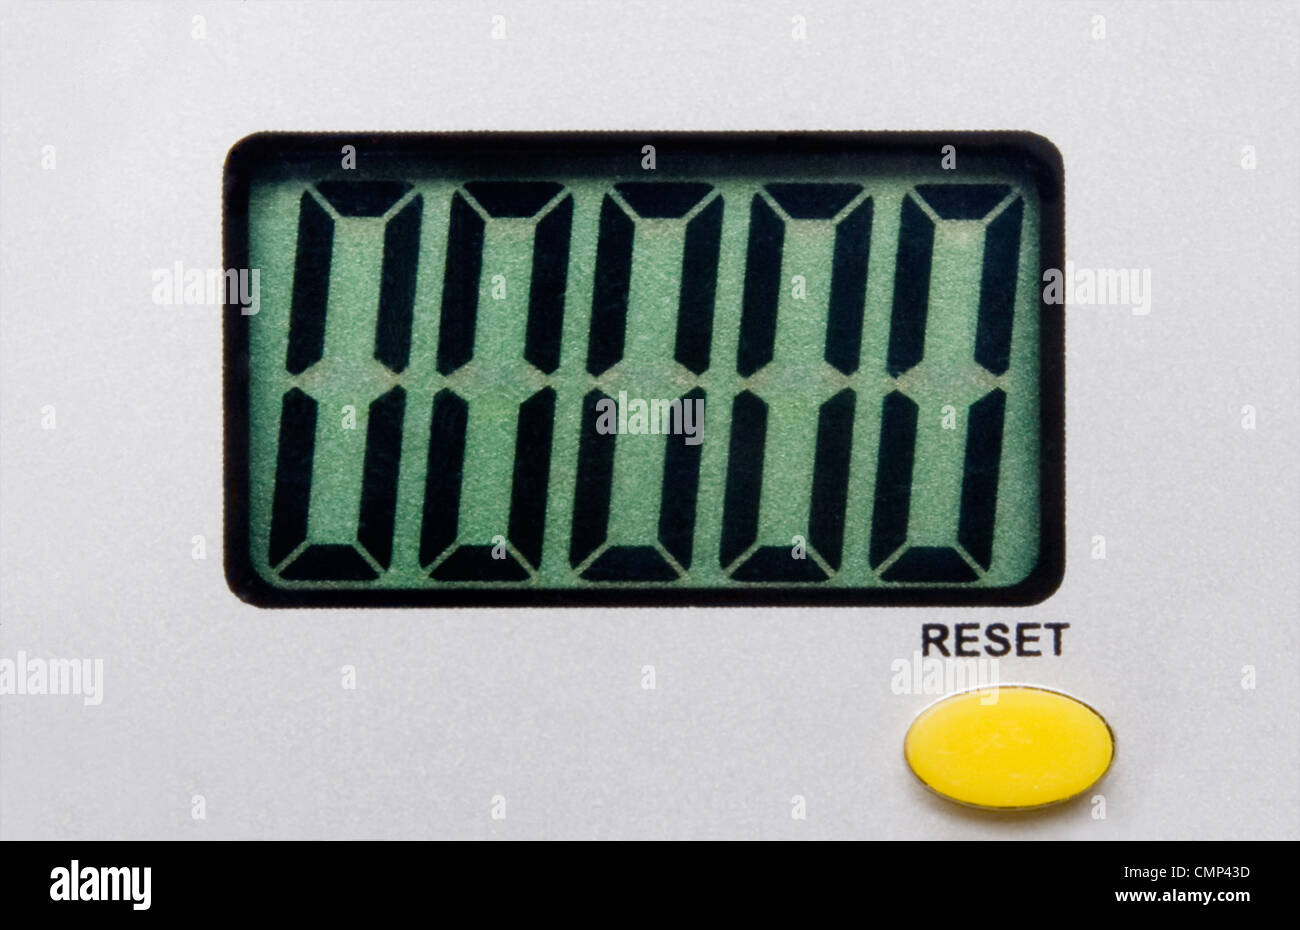 Grobe LCD mit 5 Nullen und gelbe Taste und das Wort "Reset". Licht grau strukturierten Hintergrund. Stockfoto